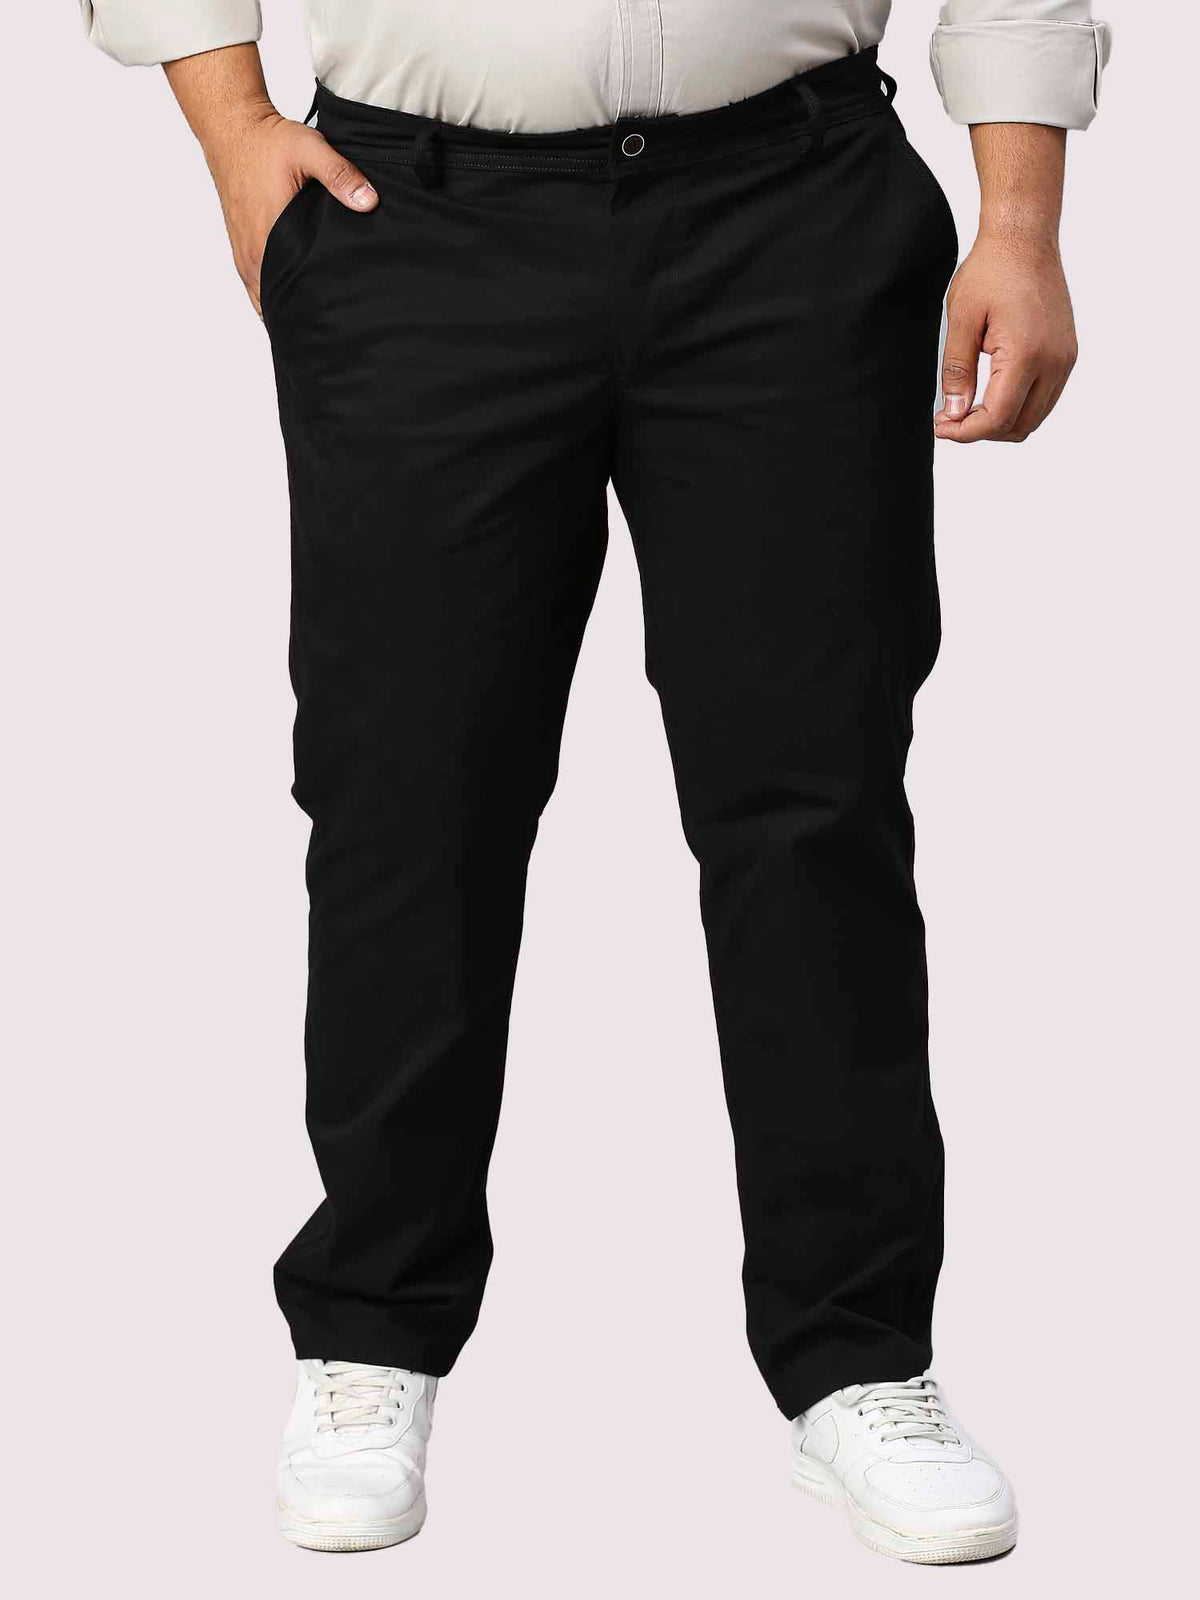 Black Solid Cotton Trouser Men's Plus Size